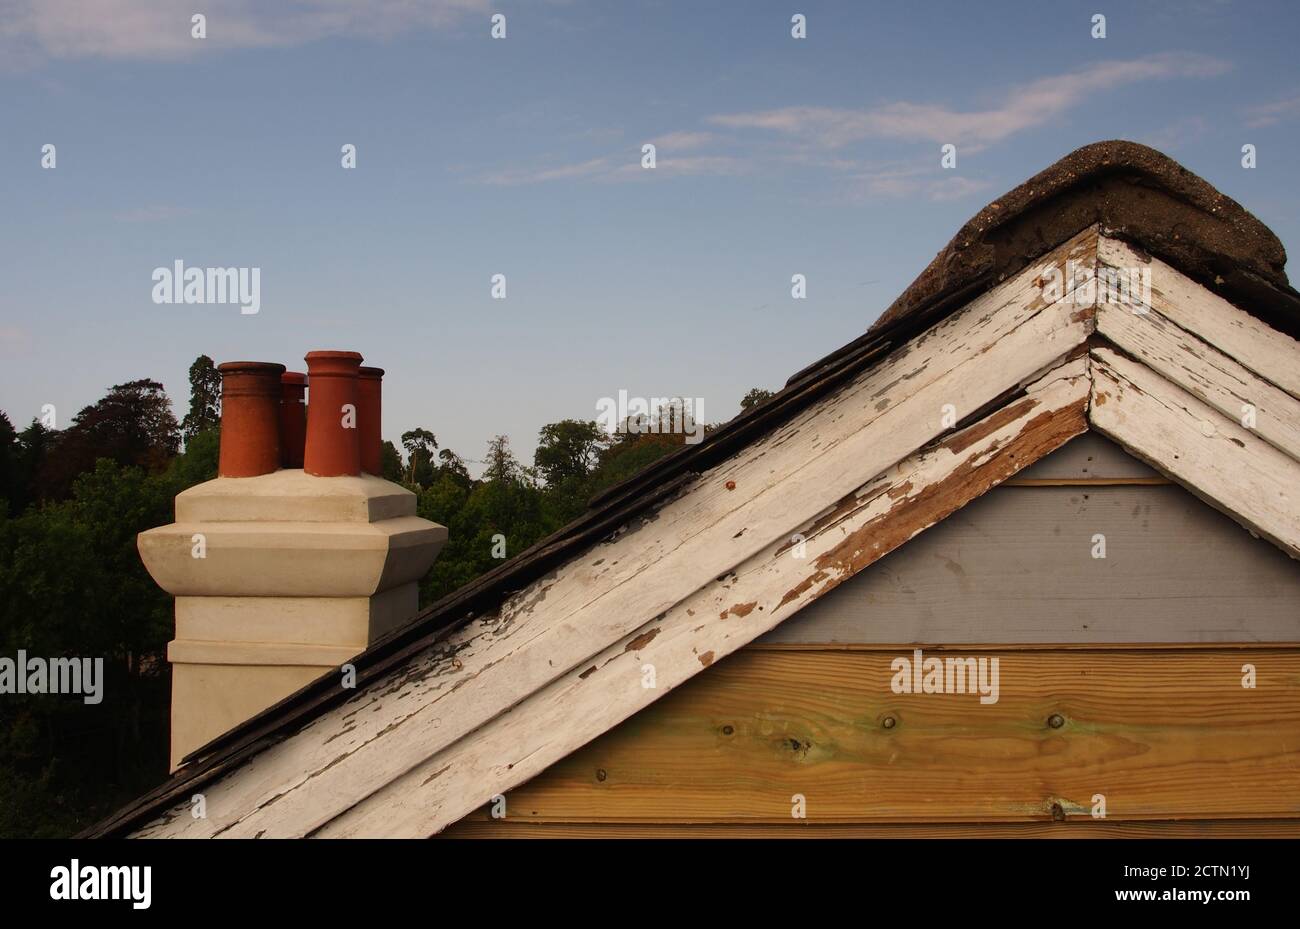 Une vue depuis un échafaudage de l'extrémité de pignon réparée d'une ancienne maison en bois, avec un toit en ardoise, qui a encore besoin d'être peint, et d'anciennes barges Banque D'Images